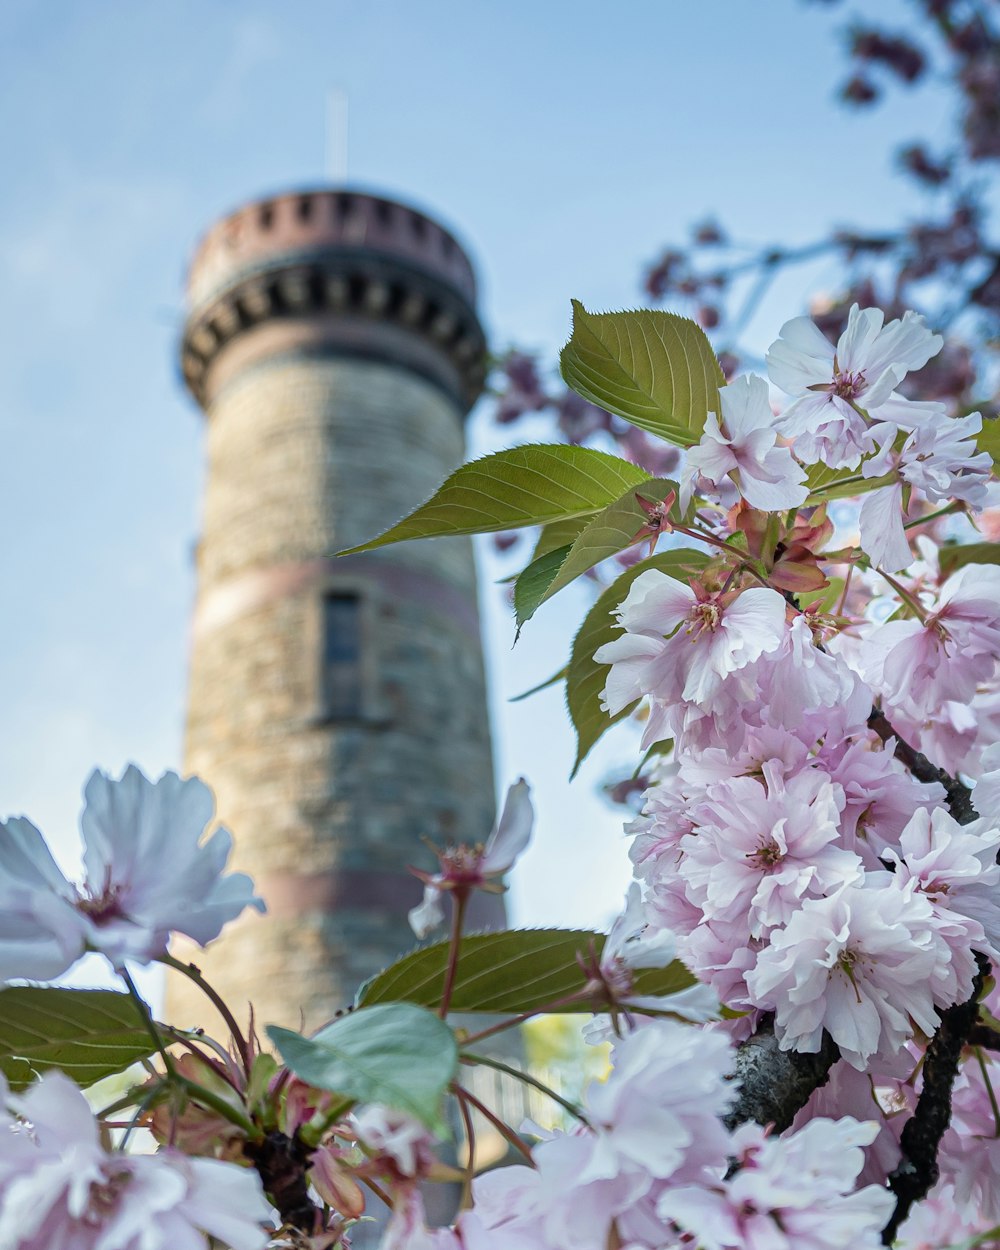 Flores blancas y rosadas cerca de la torre de hormigón blanco durante el día